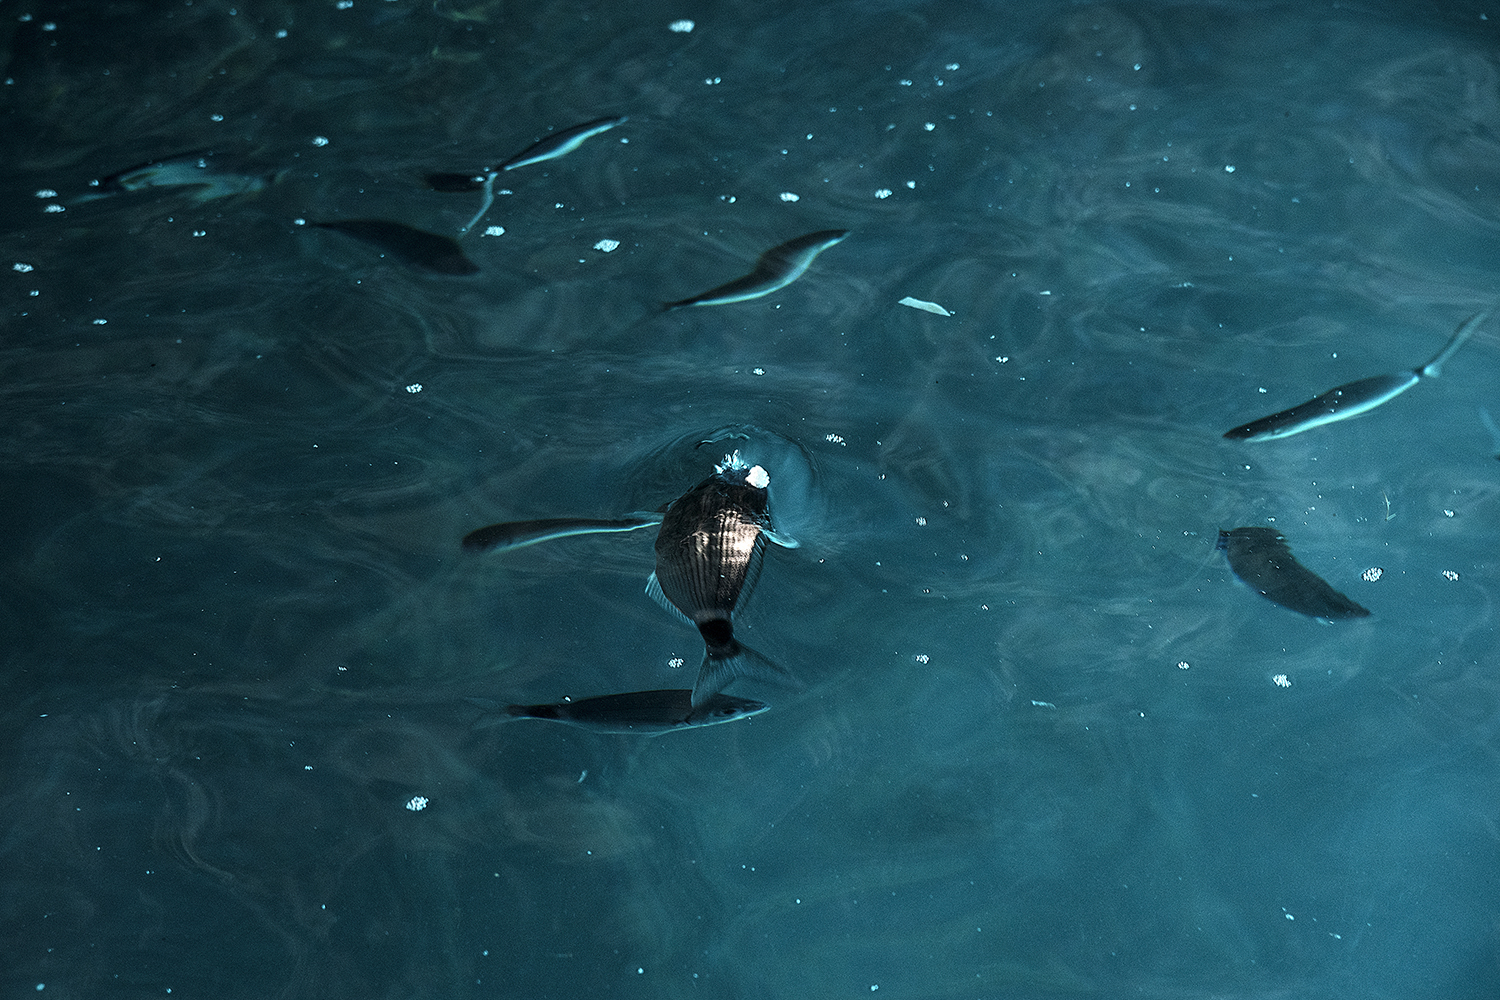  42° 06’ 51” N , 15° 28’ 45” E Grotta delle Rondinelle, San Domino, Isole Tremiti  Frammenti di polistirolo galleggianti in superficie, vengono scambiati per cibo e ingeriti dai pesci. 